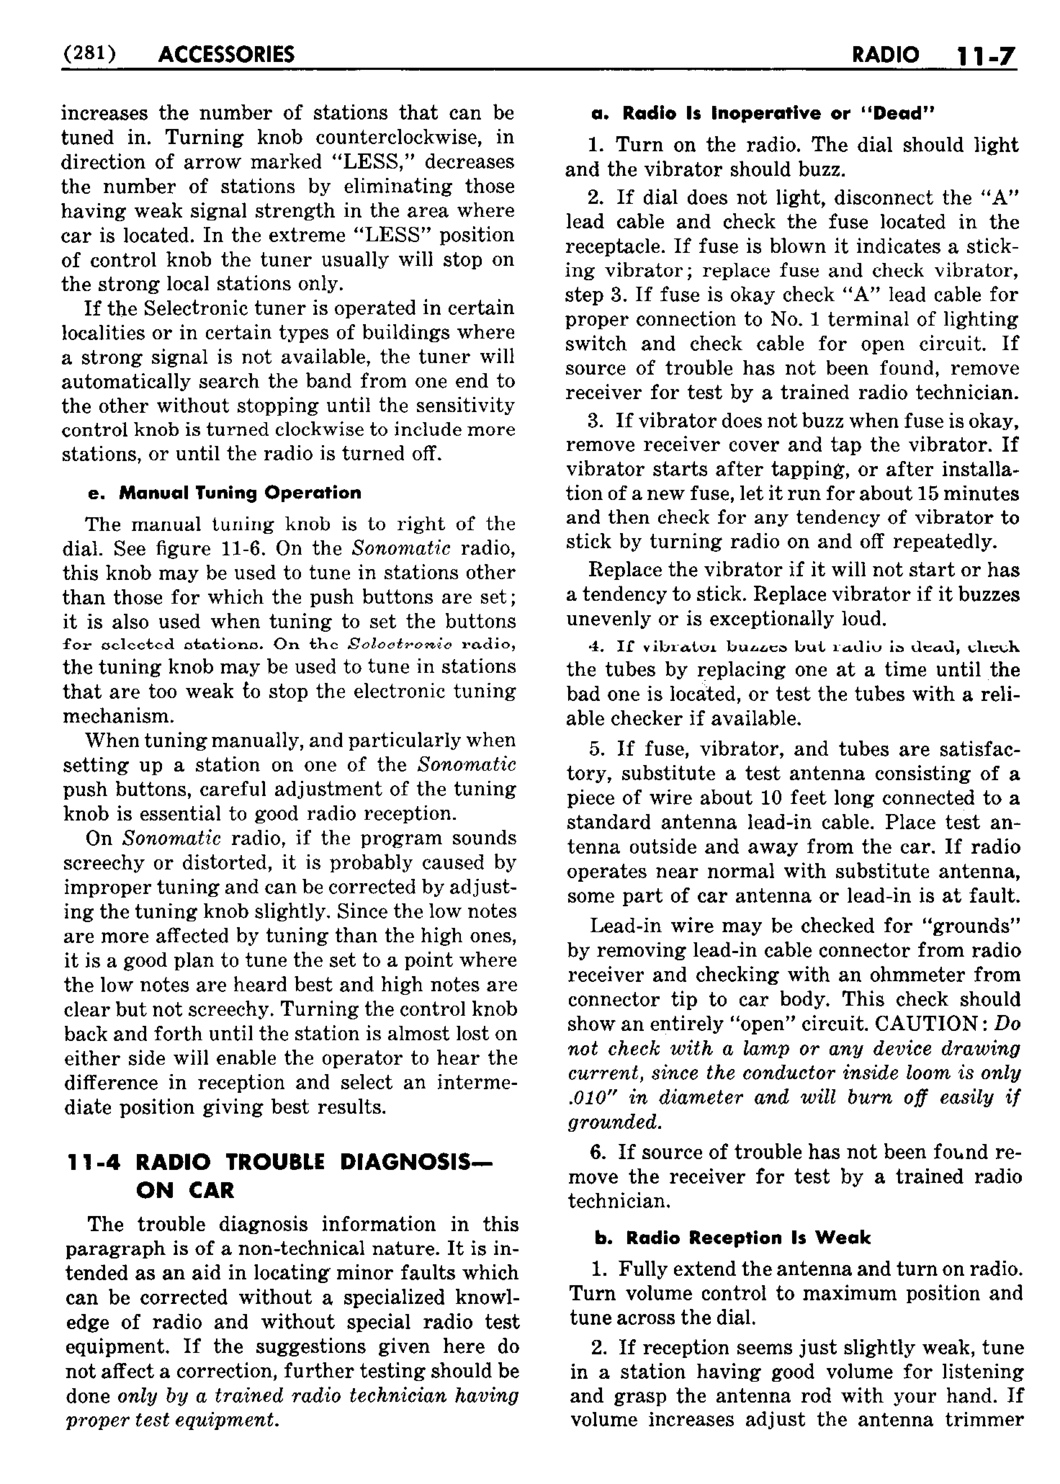 n_12 1953 Buick Shop Manual - Accessories-007-007.jpg